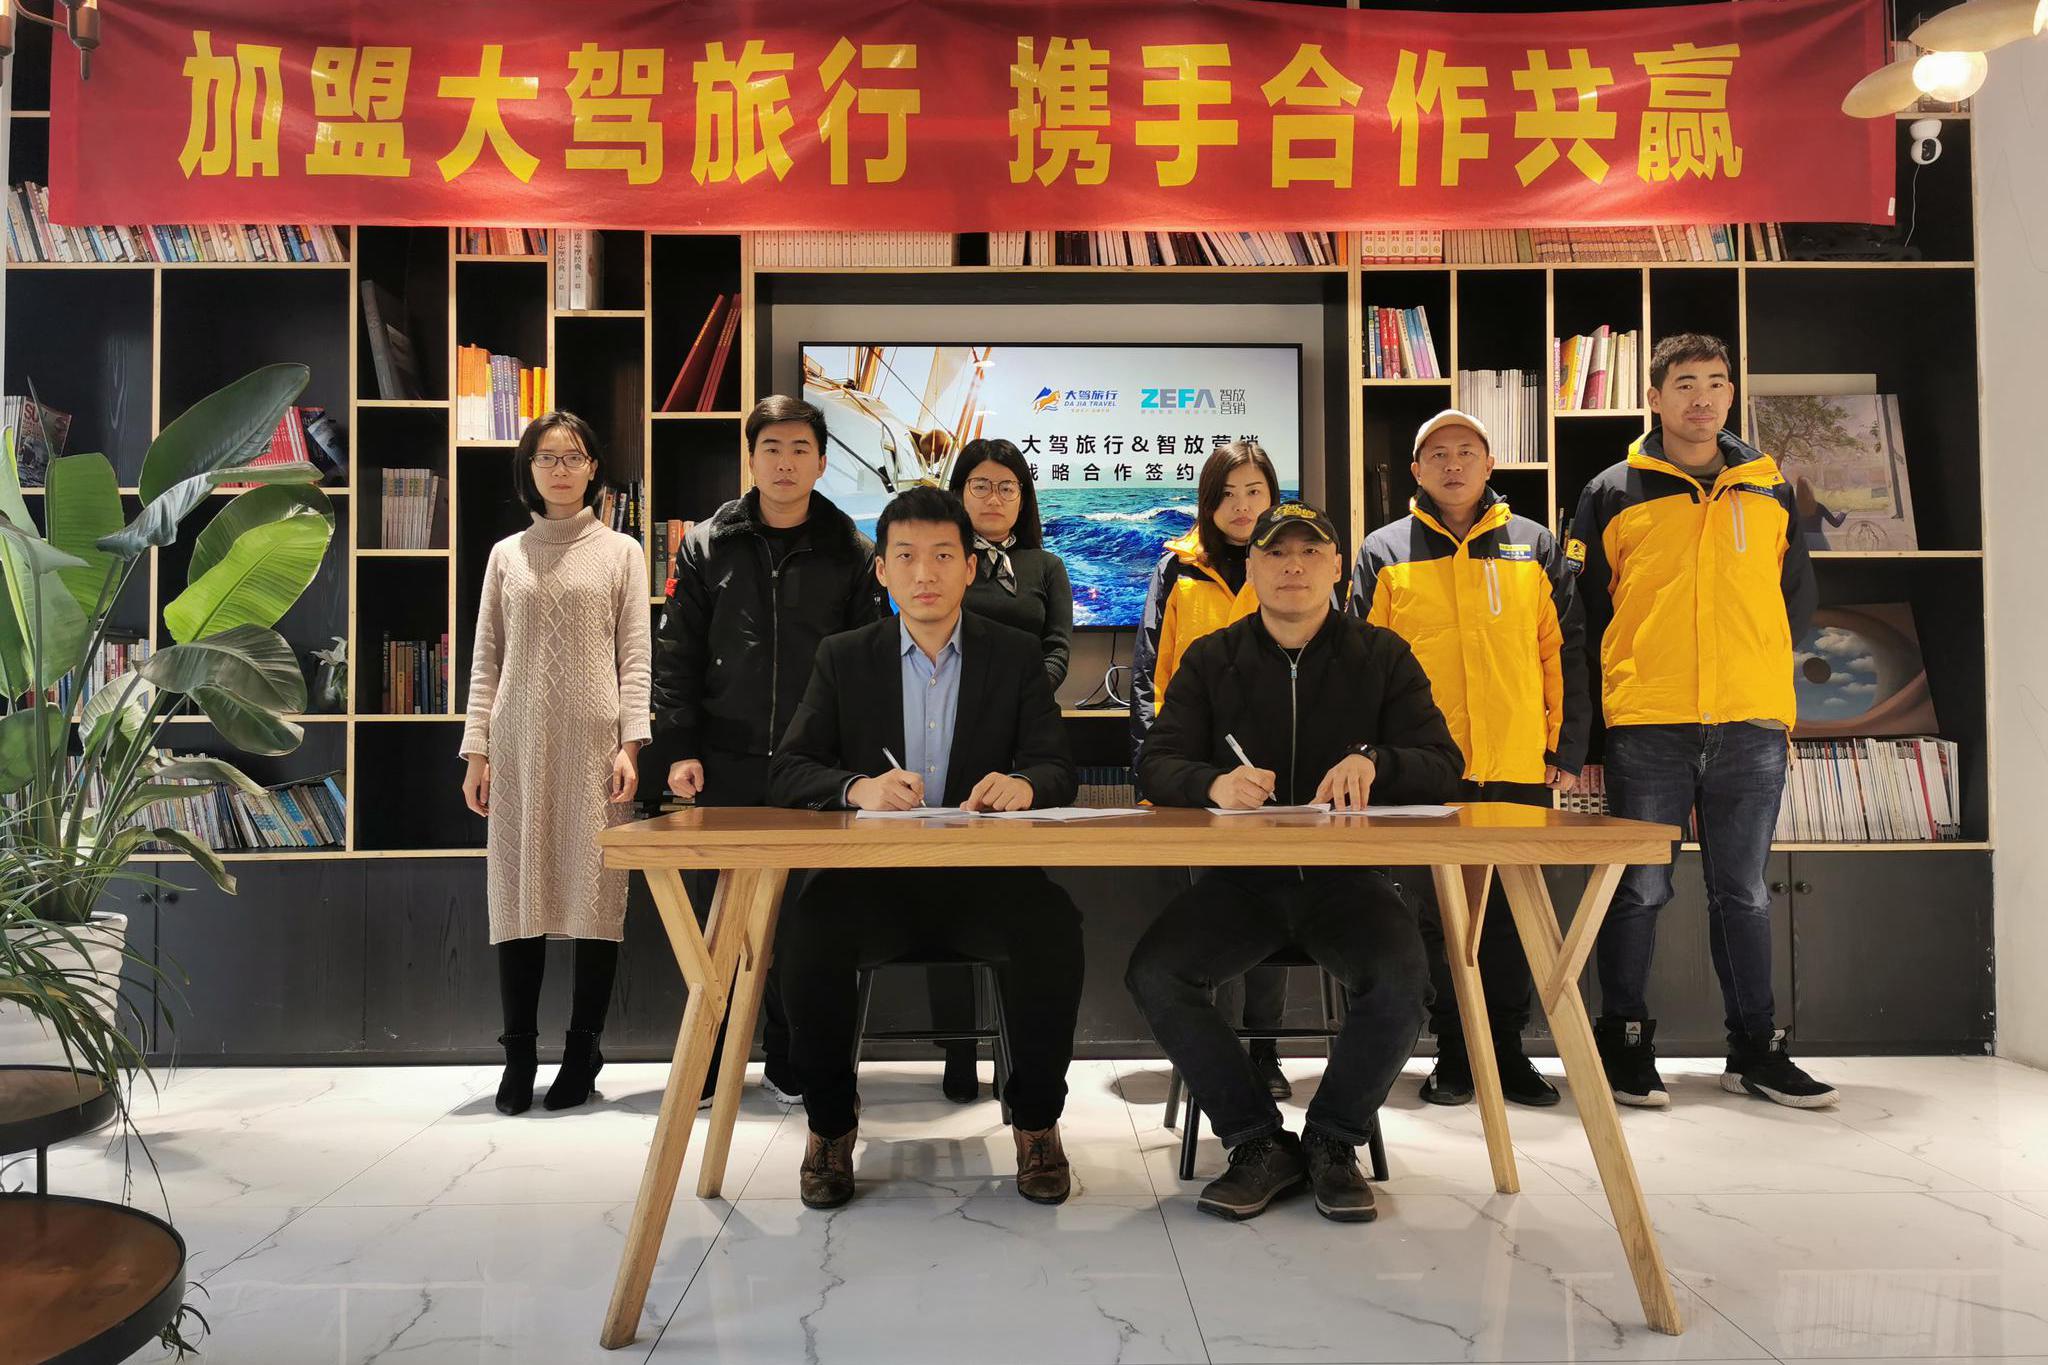 智放营销合伙人、中国矩阵式营销创始人王敏逸与大驾旅行签约仪式